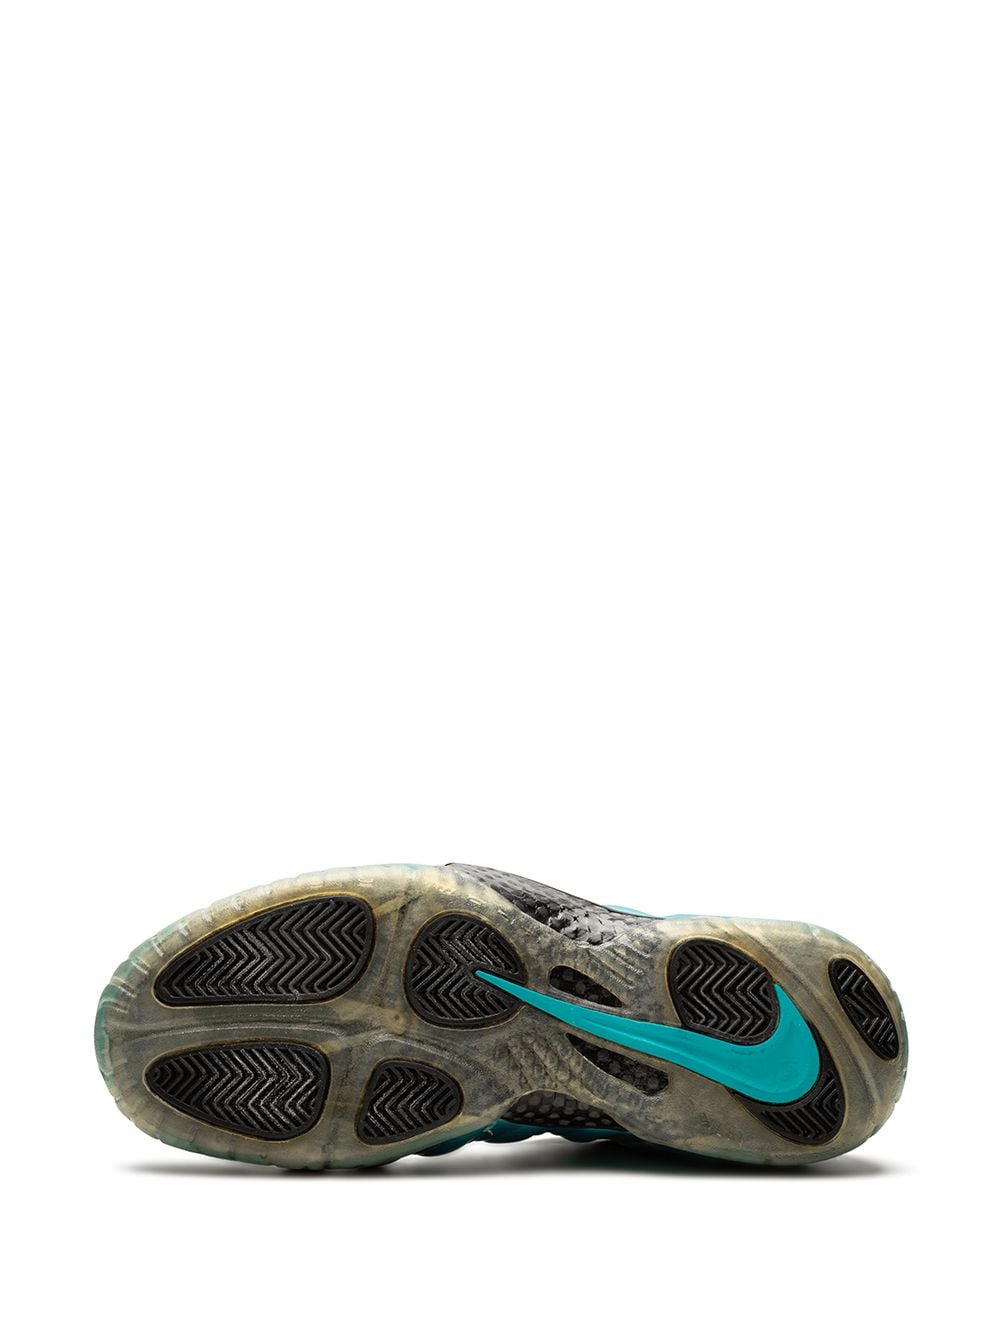 Nike Foamposite Pro Electric Blue